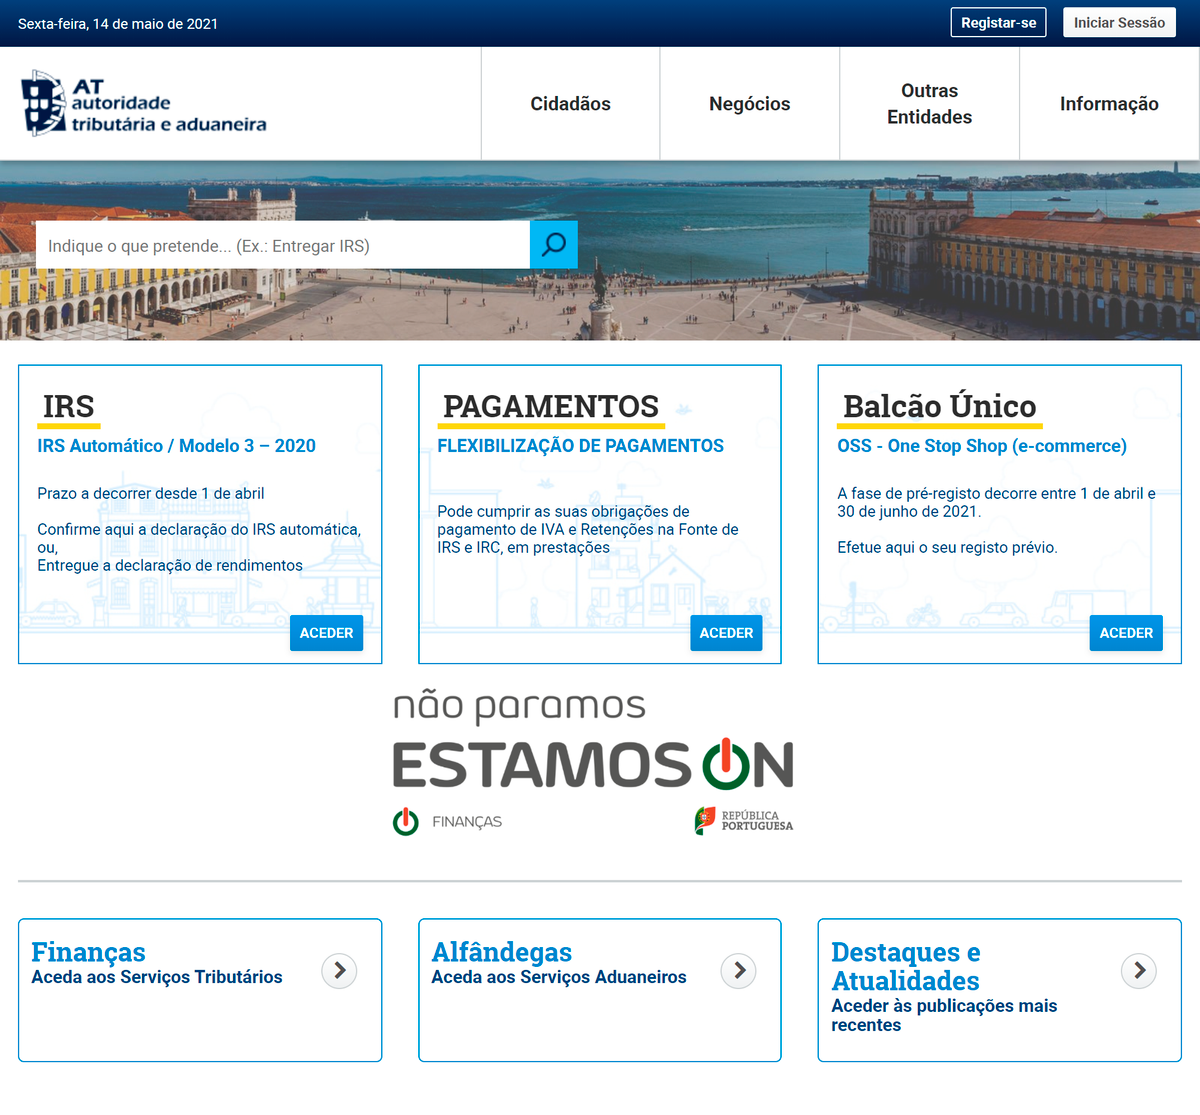 Сайт Autoridade Tributária e Aduaneira — налоговой службы. На мой взгляд, это самый адекватный госорган в Португалии: практически все действия можно совершить онлайн